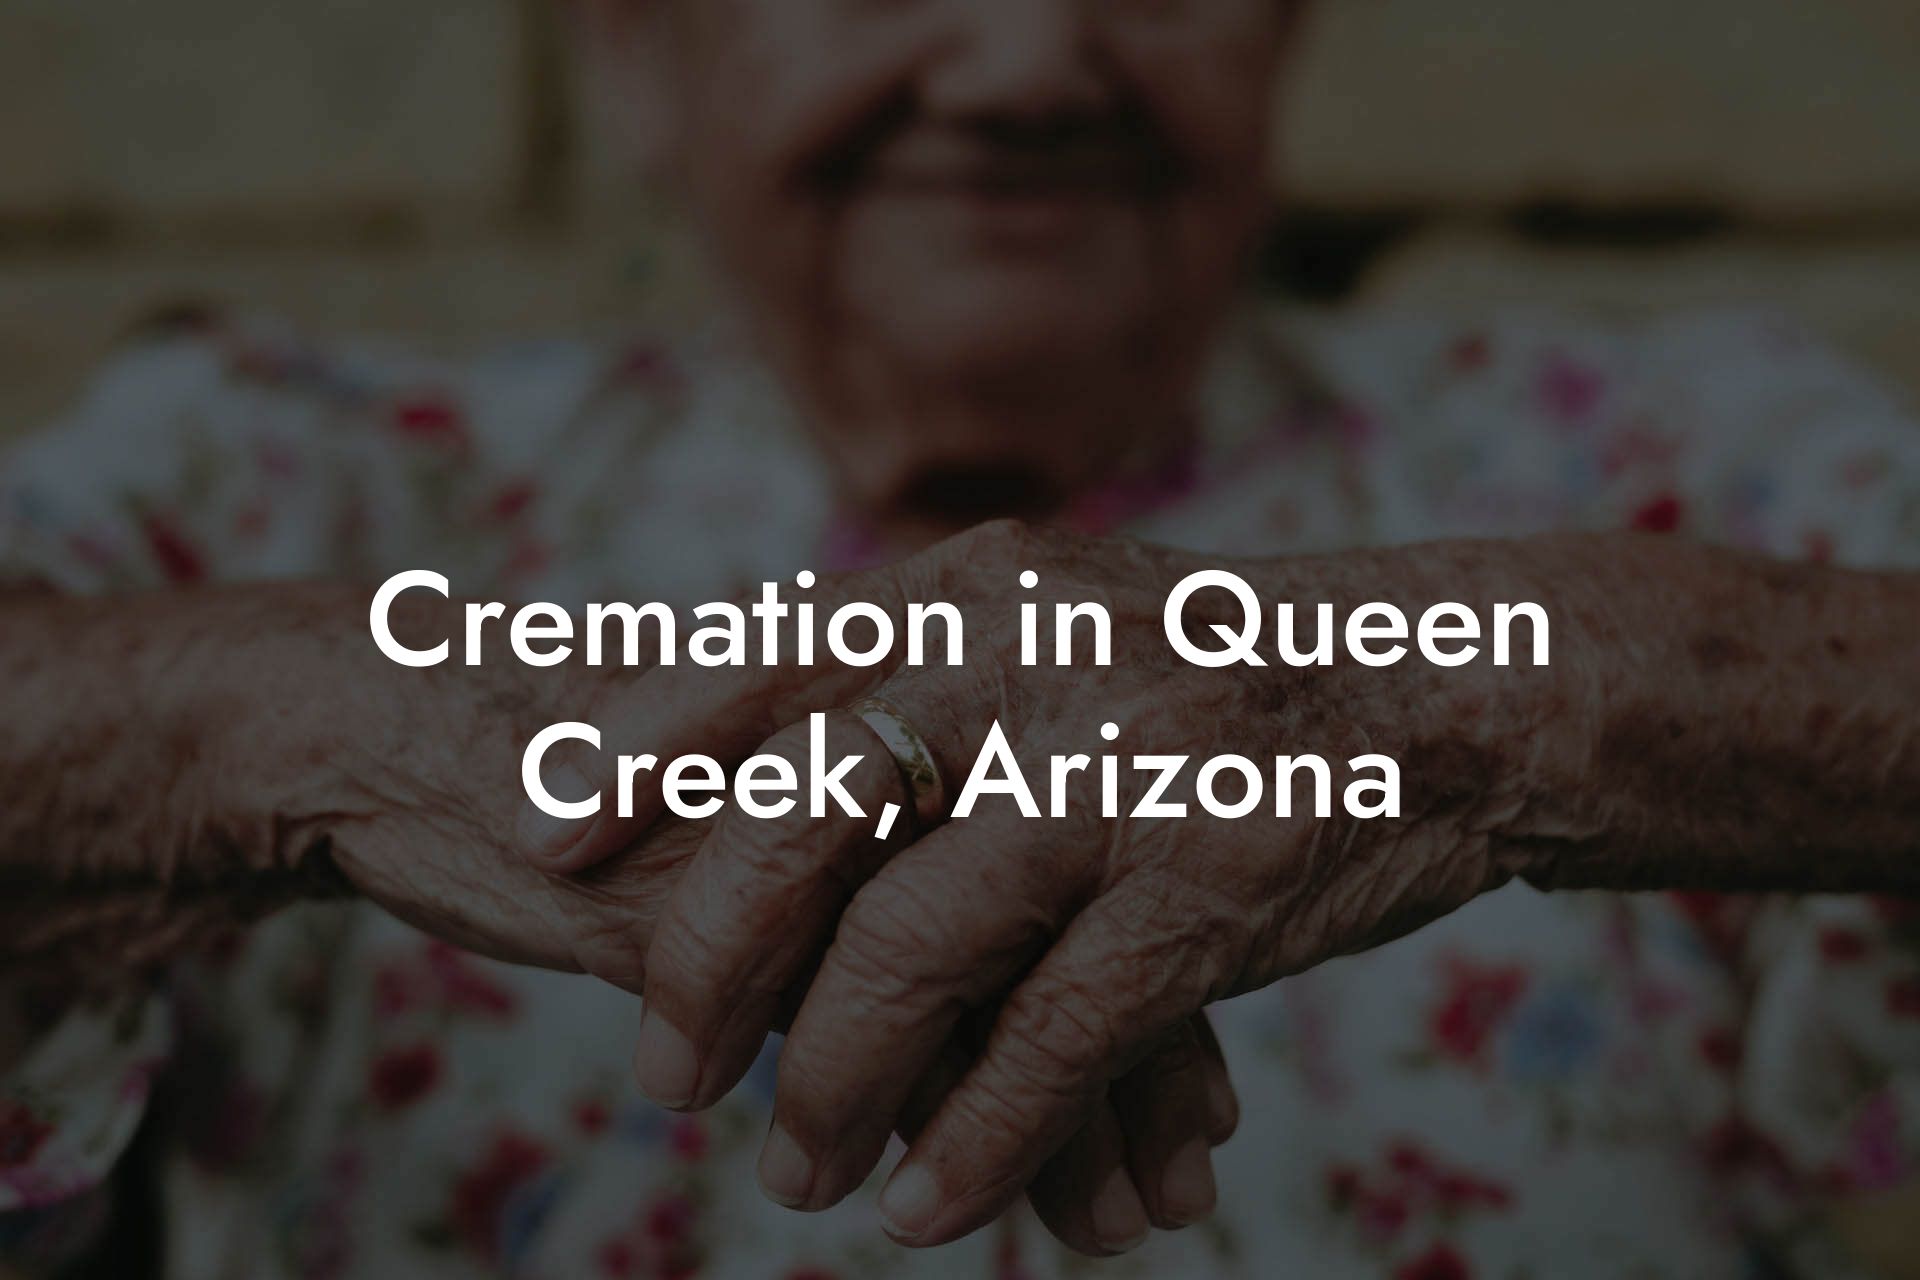 Cremation in Queen Creek, Arizona